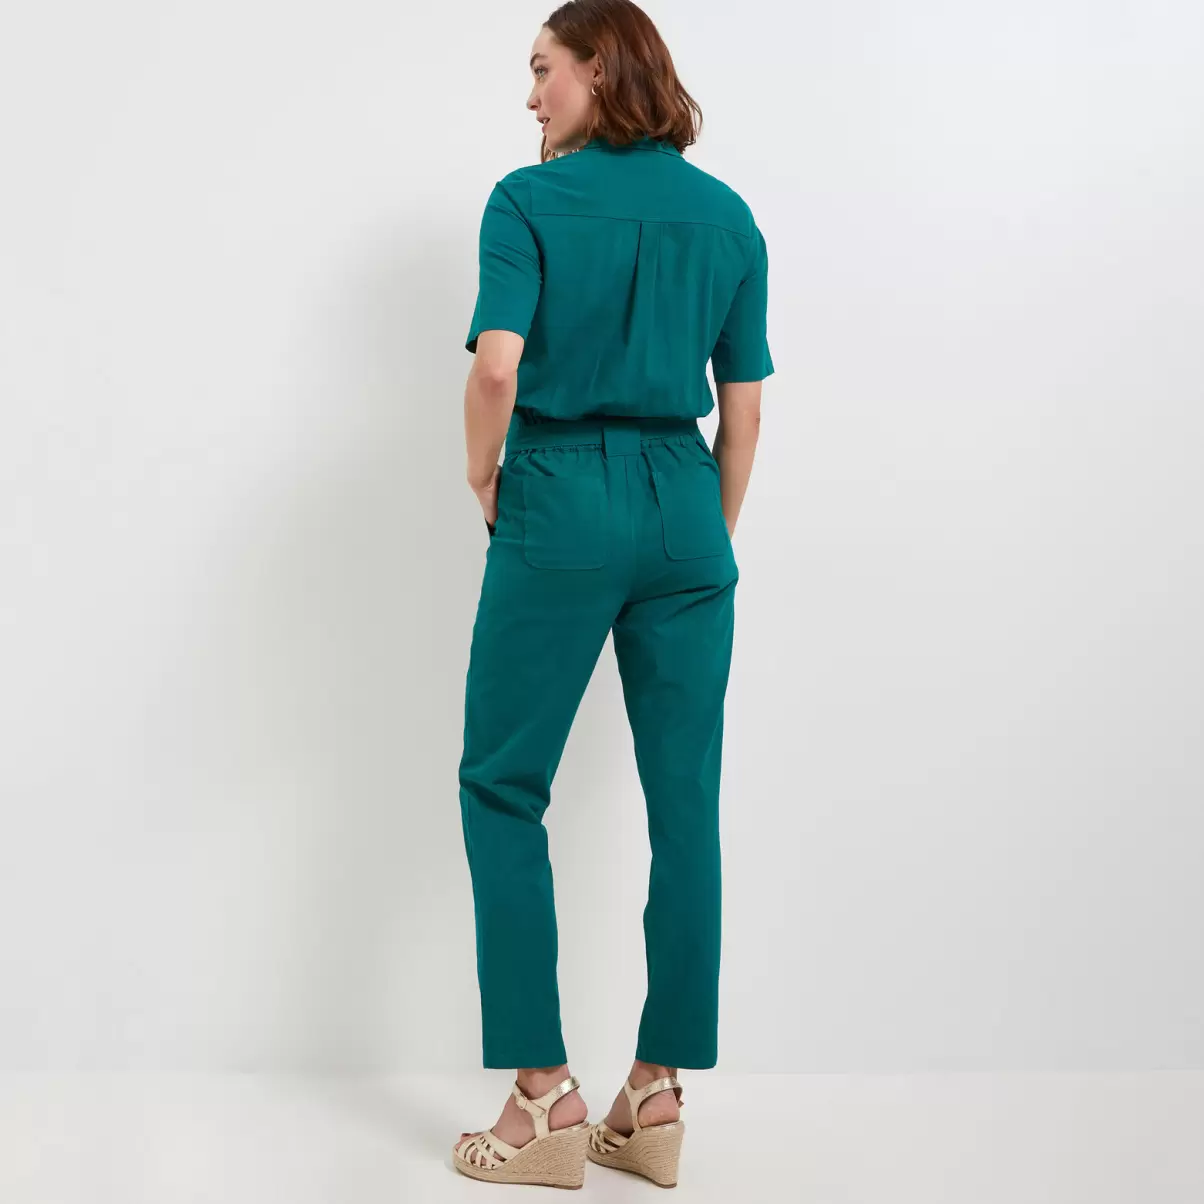 Robes Vert Femme Grain De Malic Combinaison Pantalon Zippée Femme Réduction De Prix - 1